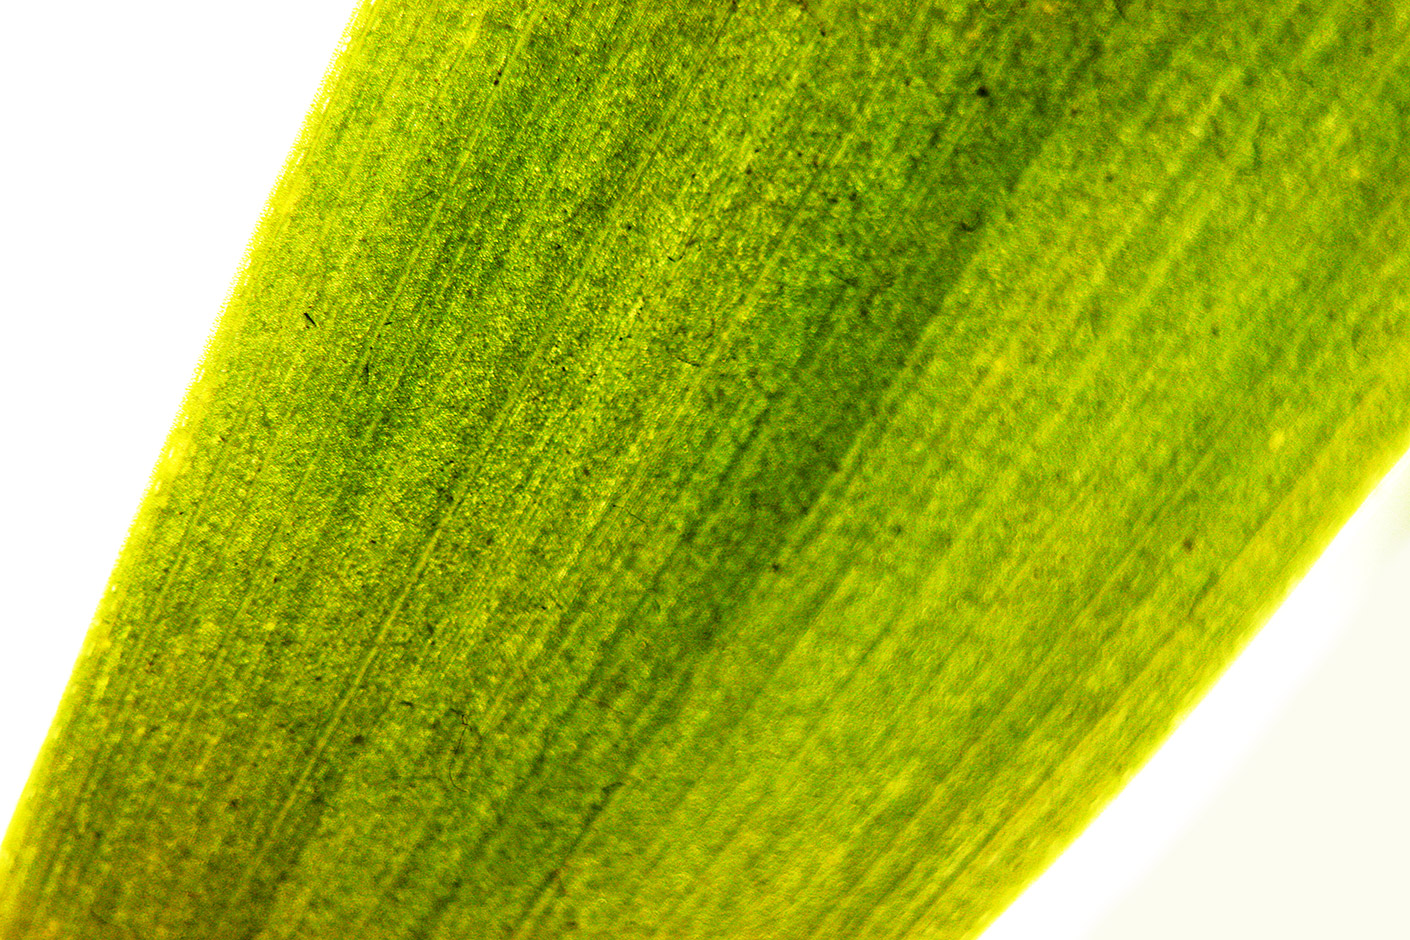 macro photo zoom in leaf blade